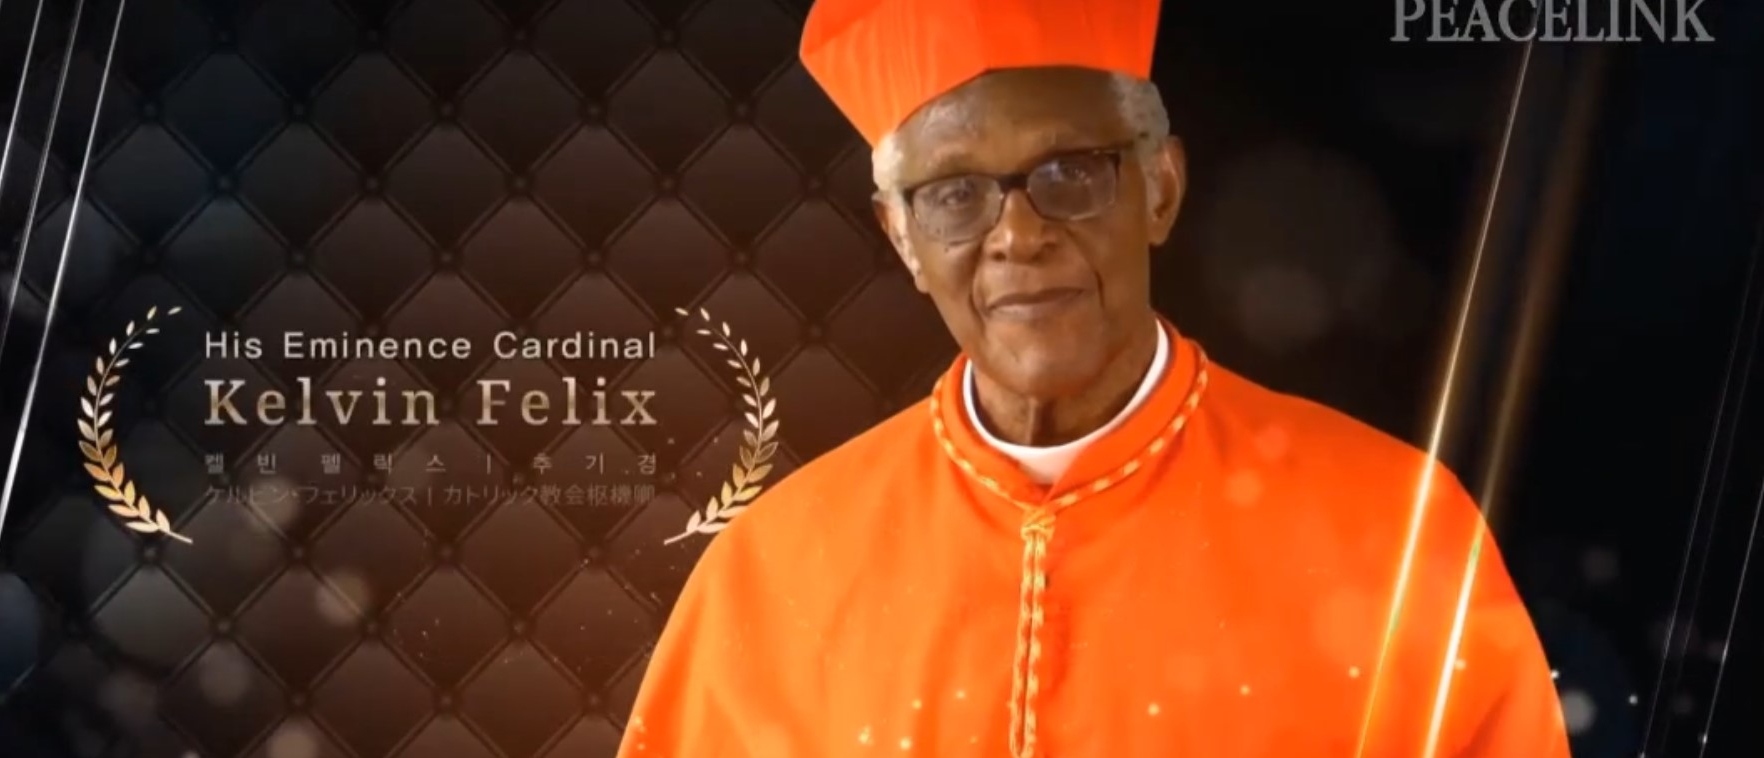 Le cardinal Edwin Felix était archevêque de Sainte-Lucie, dans les Caraïbes | capture d'écran Facebook 